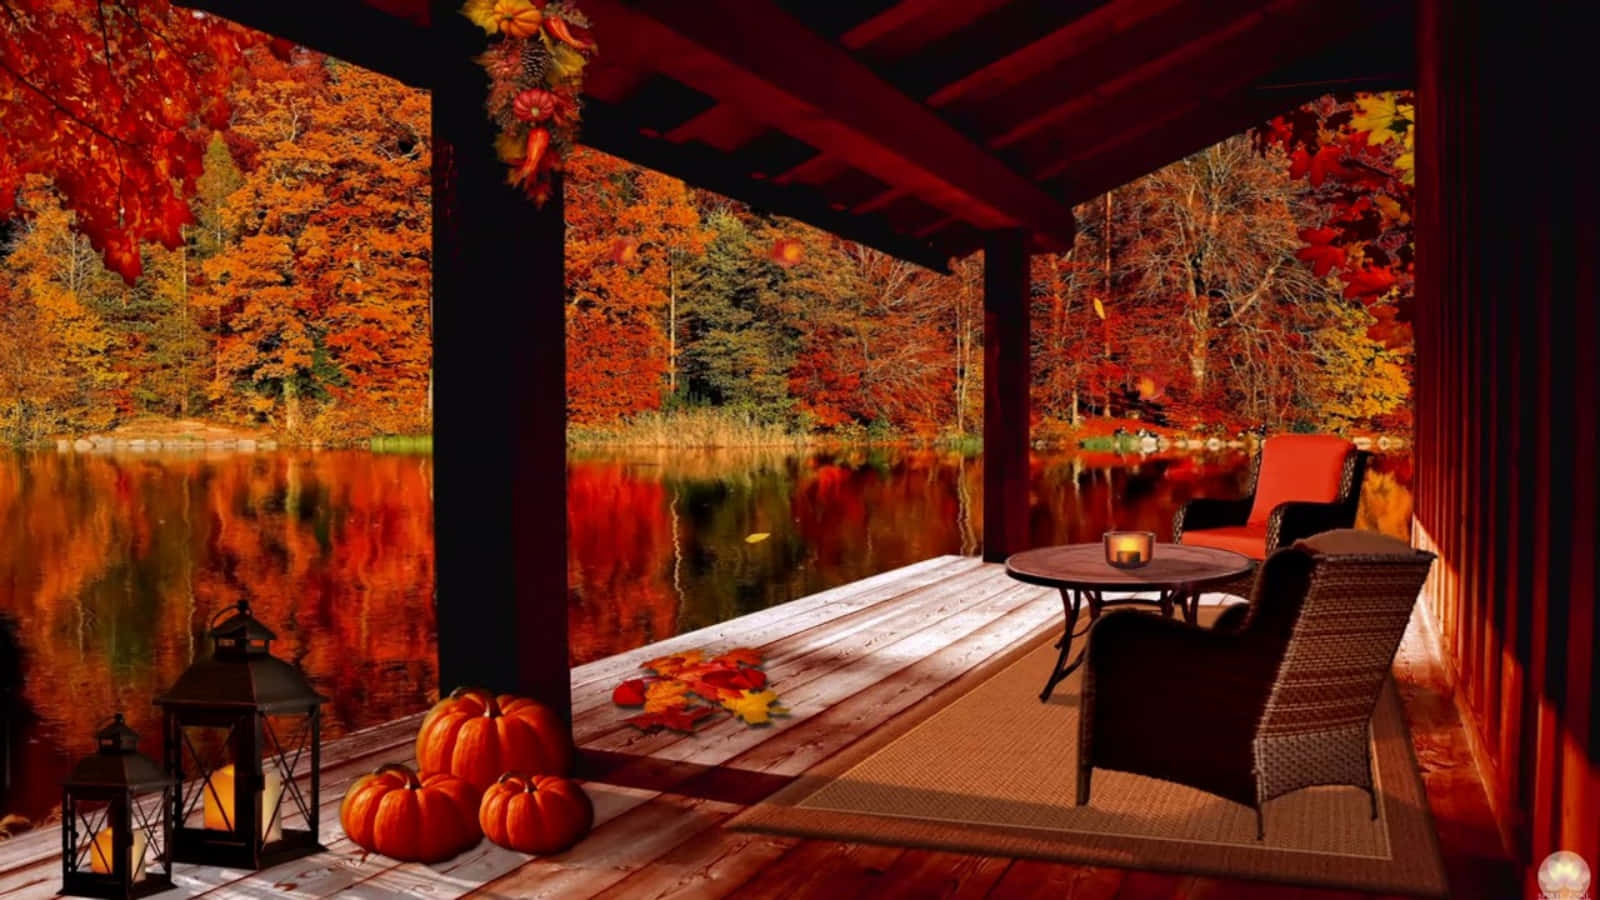 Nyd det rolige udsyn af hyggelig efterårs skrivebordsbaggrund. Wallpaper